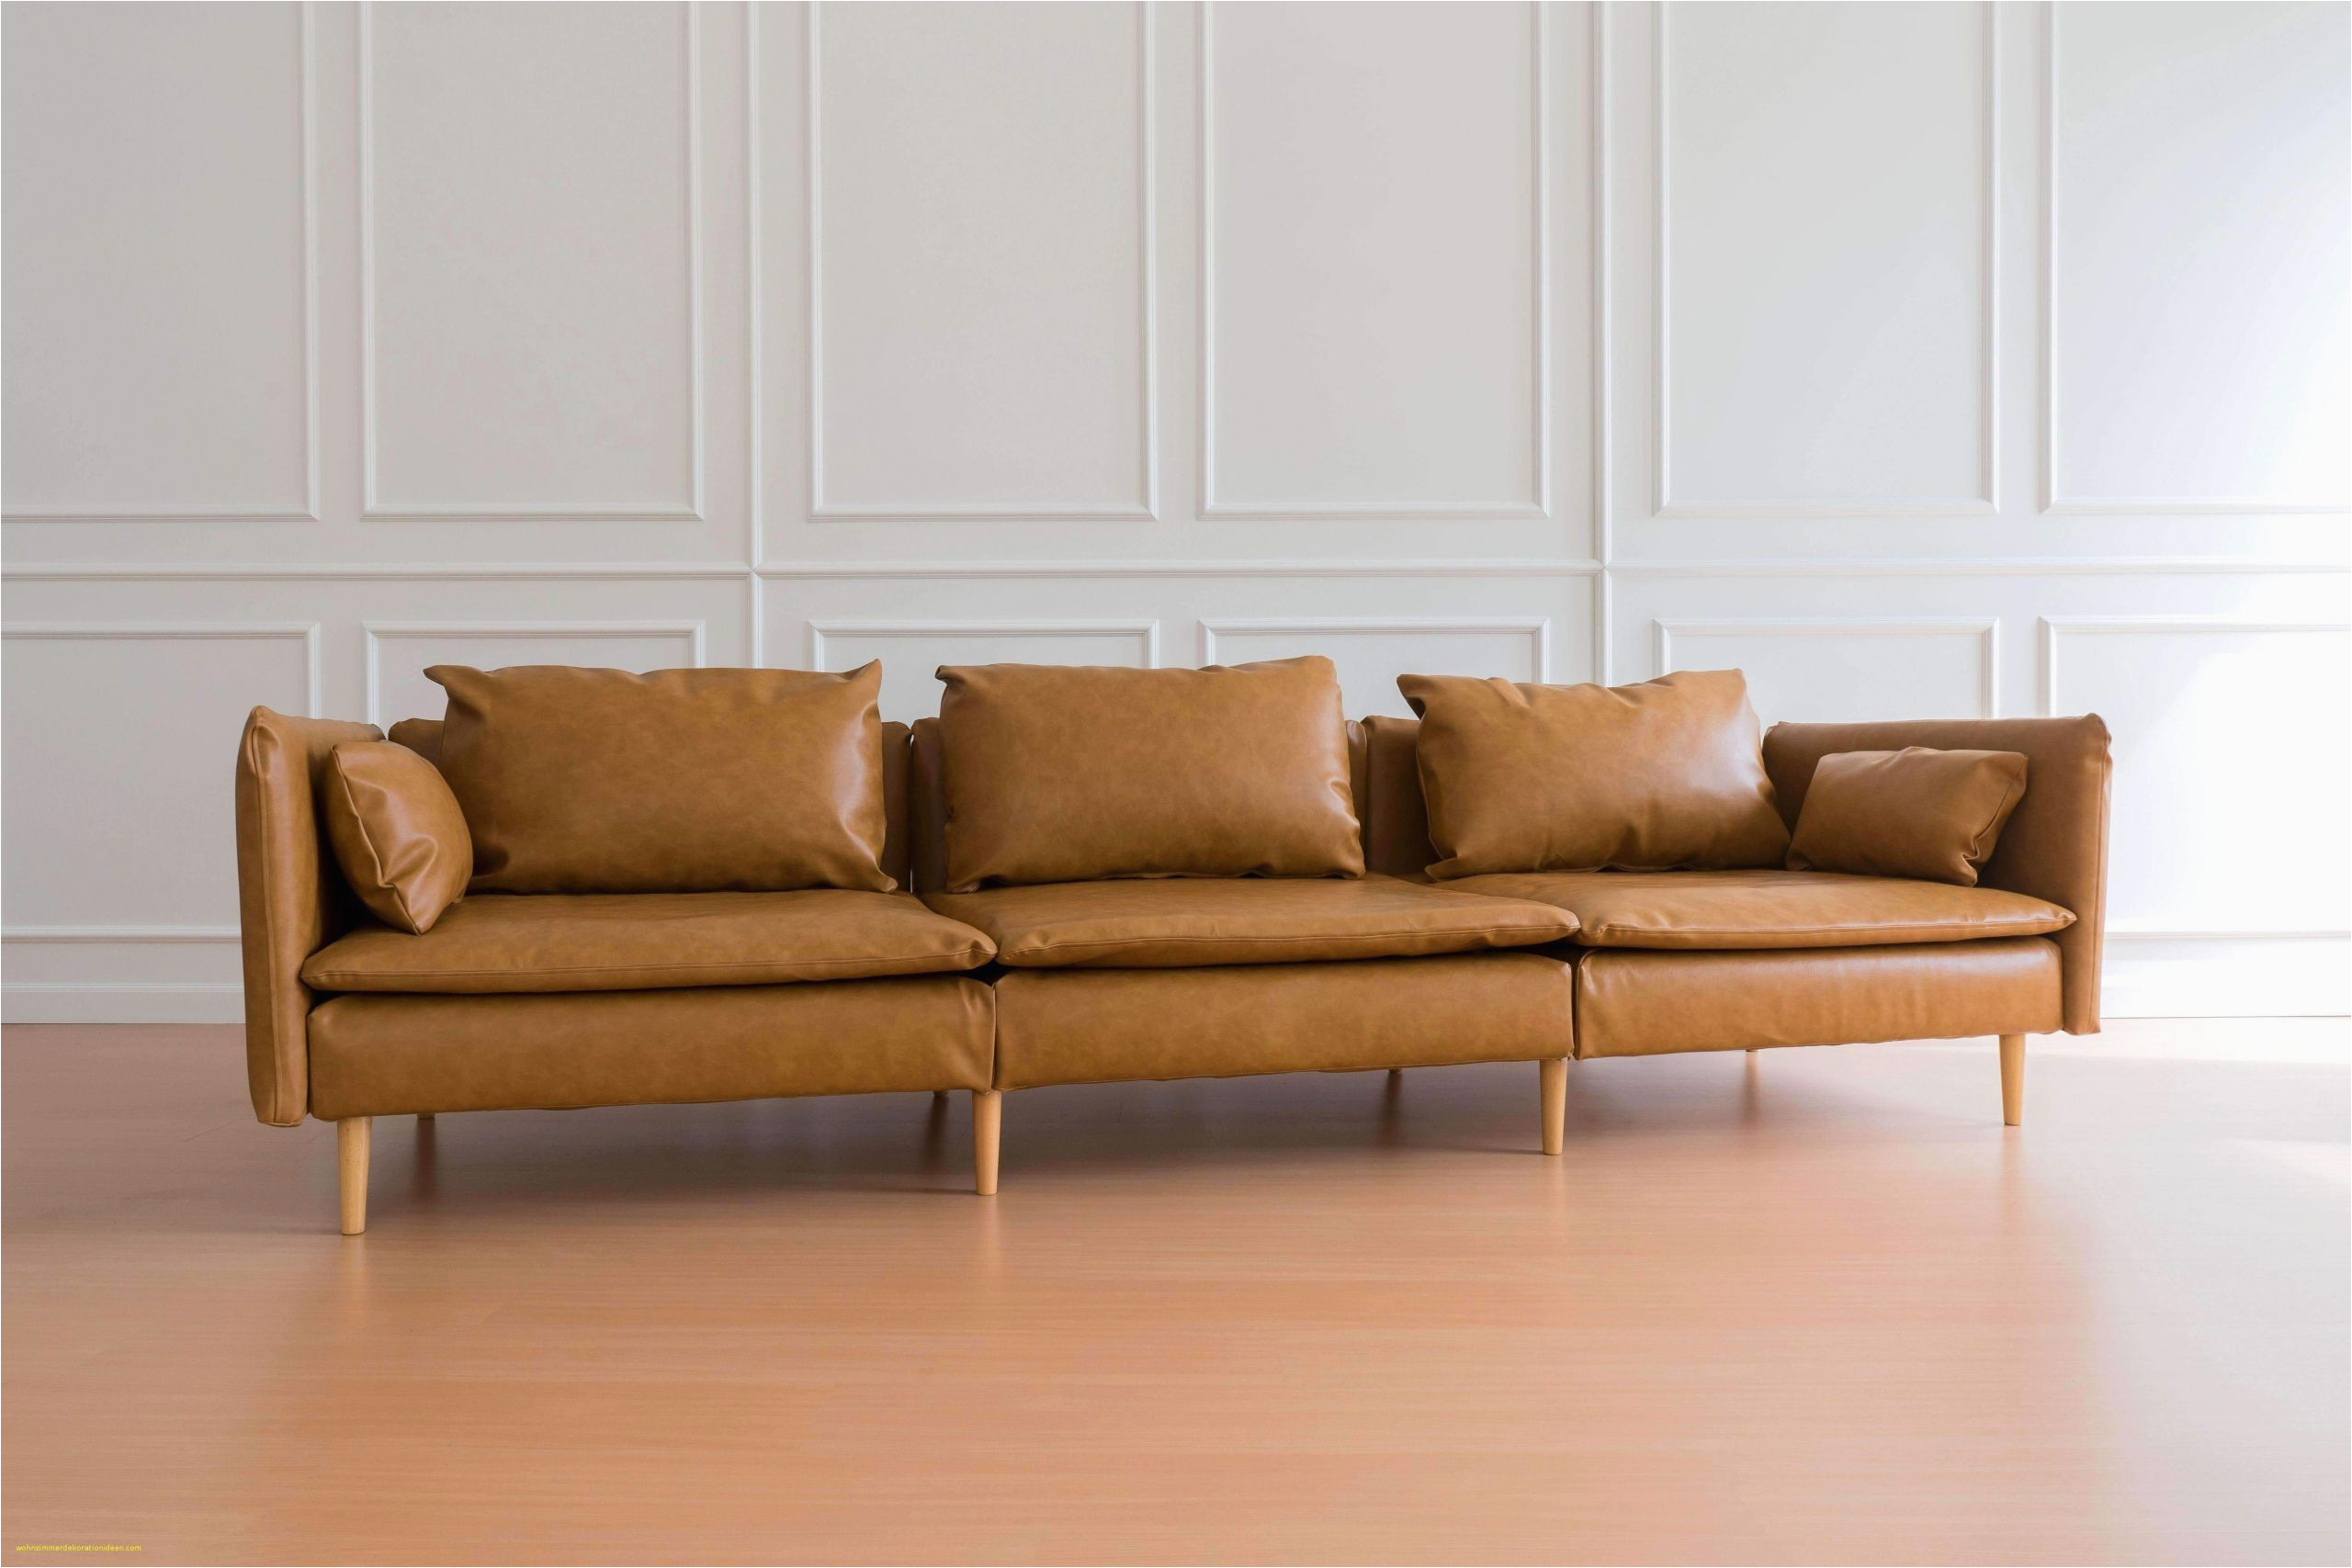 Kleines Holz sofa Bild Wohnzimmer Elegant Kleines sofa Ikea Inspirierend